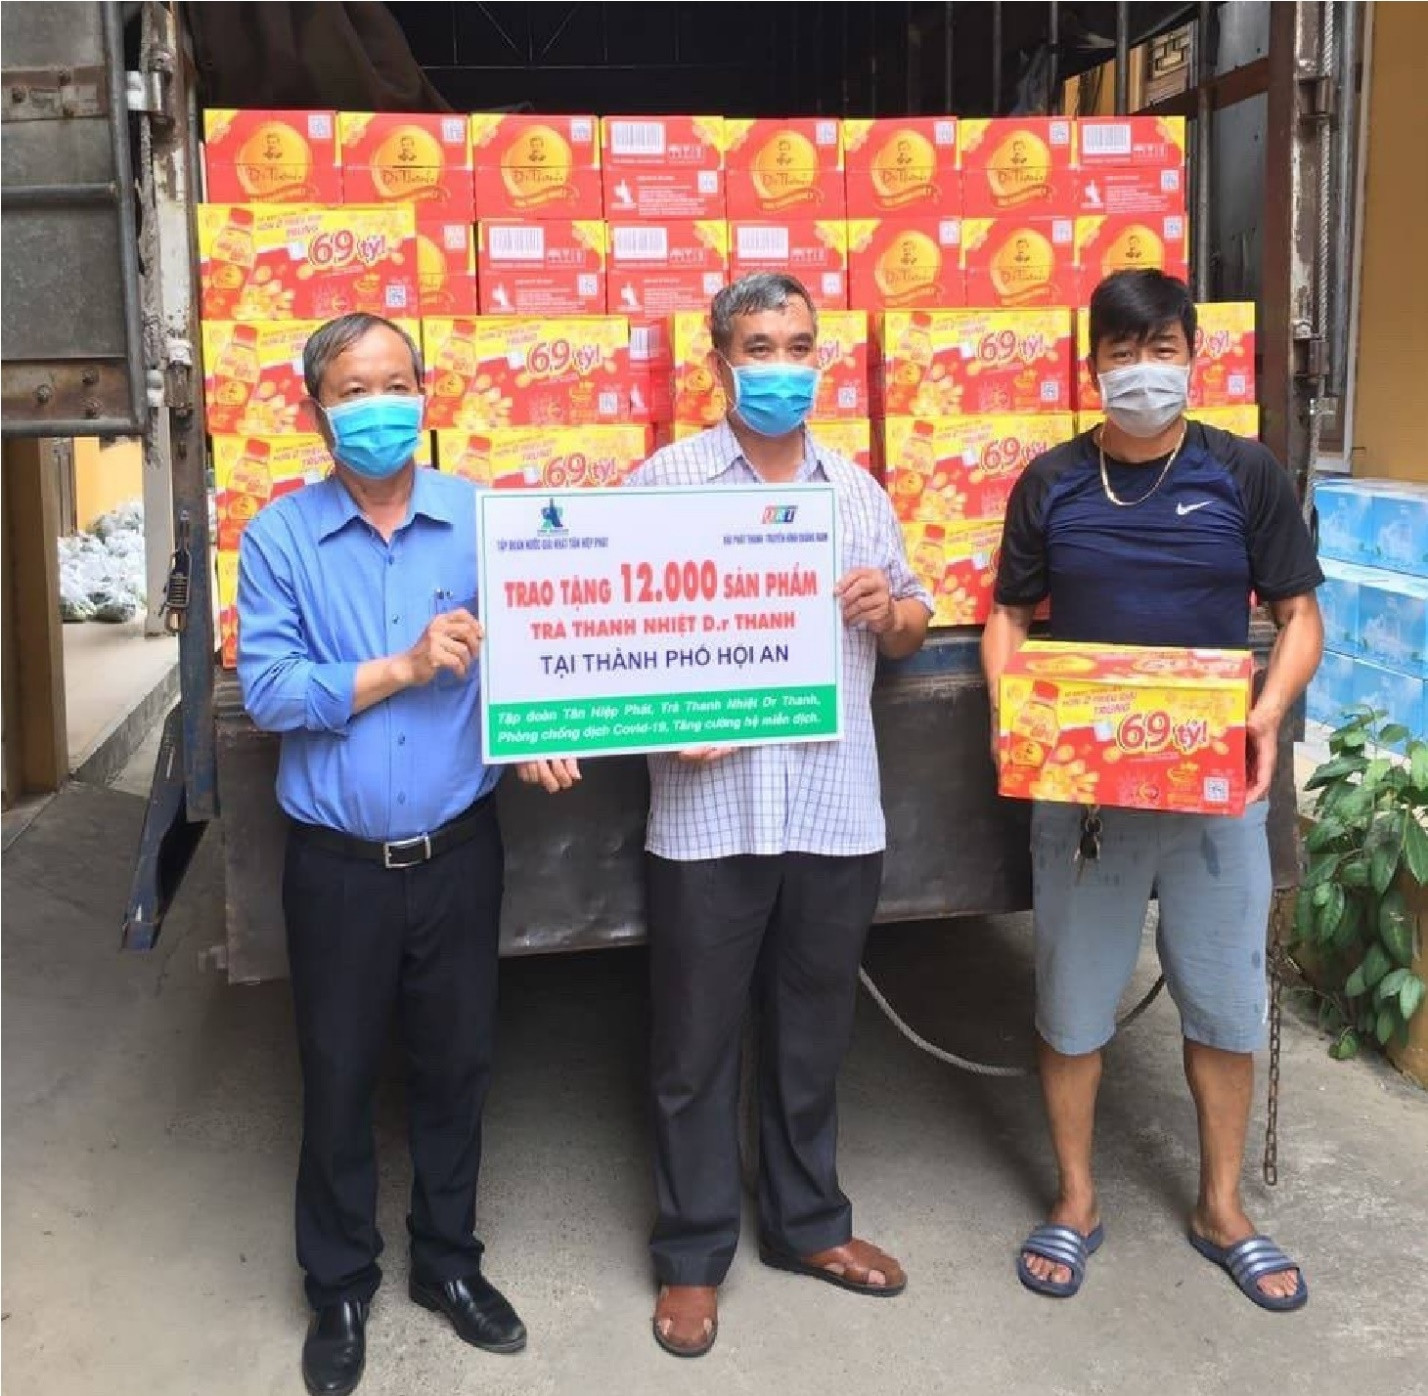 Cùng lúc đó, 12.000 sản phẩm Trà Thanh Nhiệt Dr Thanh khác cũng được trao gửi đến chính quyền, người dân tại thành phố Hội An.